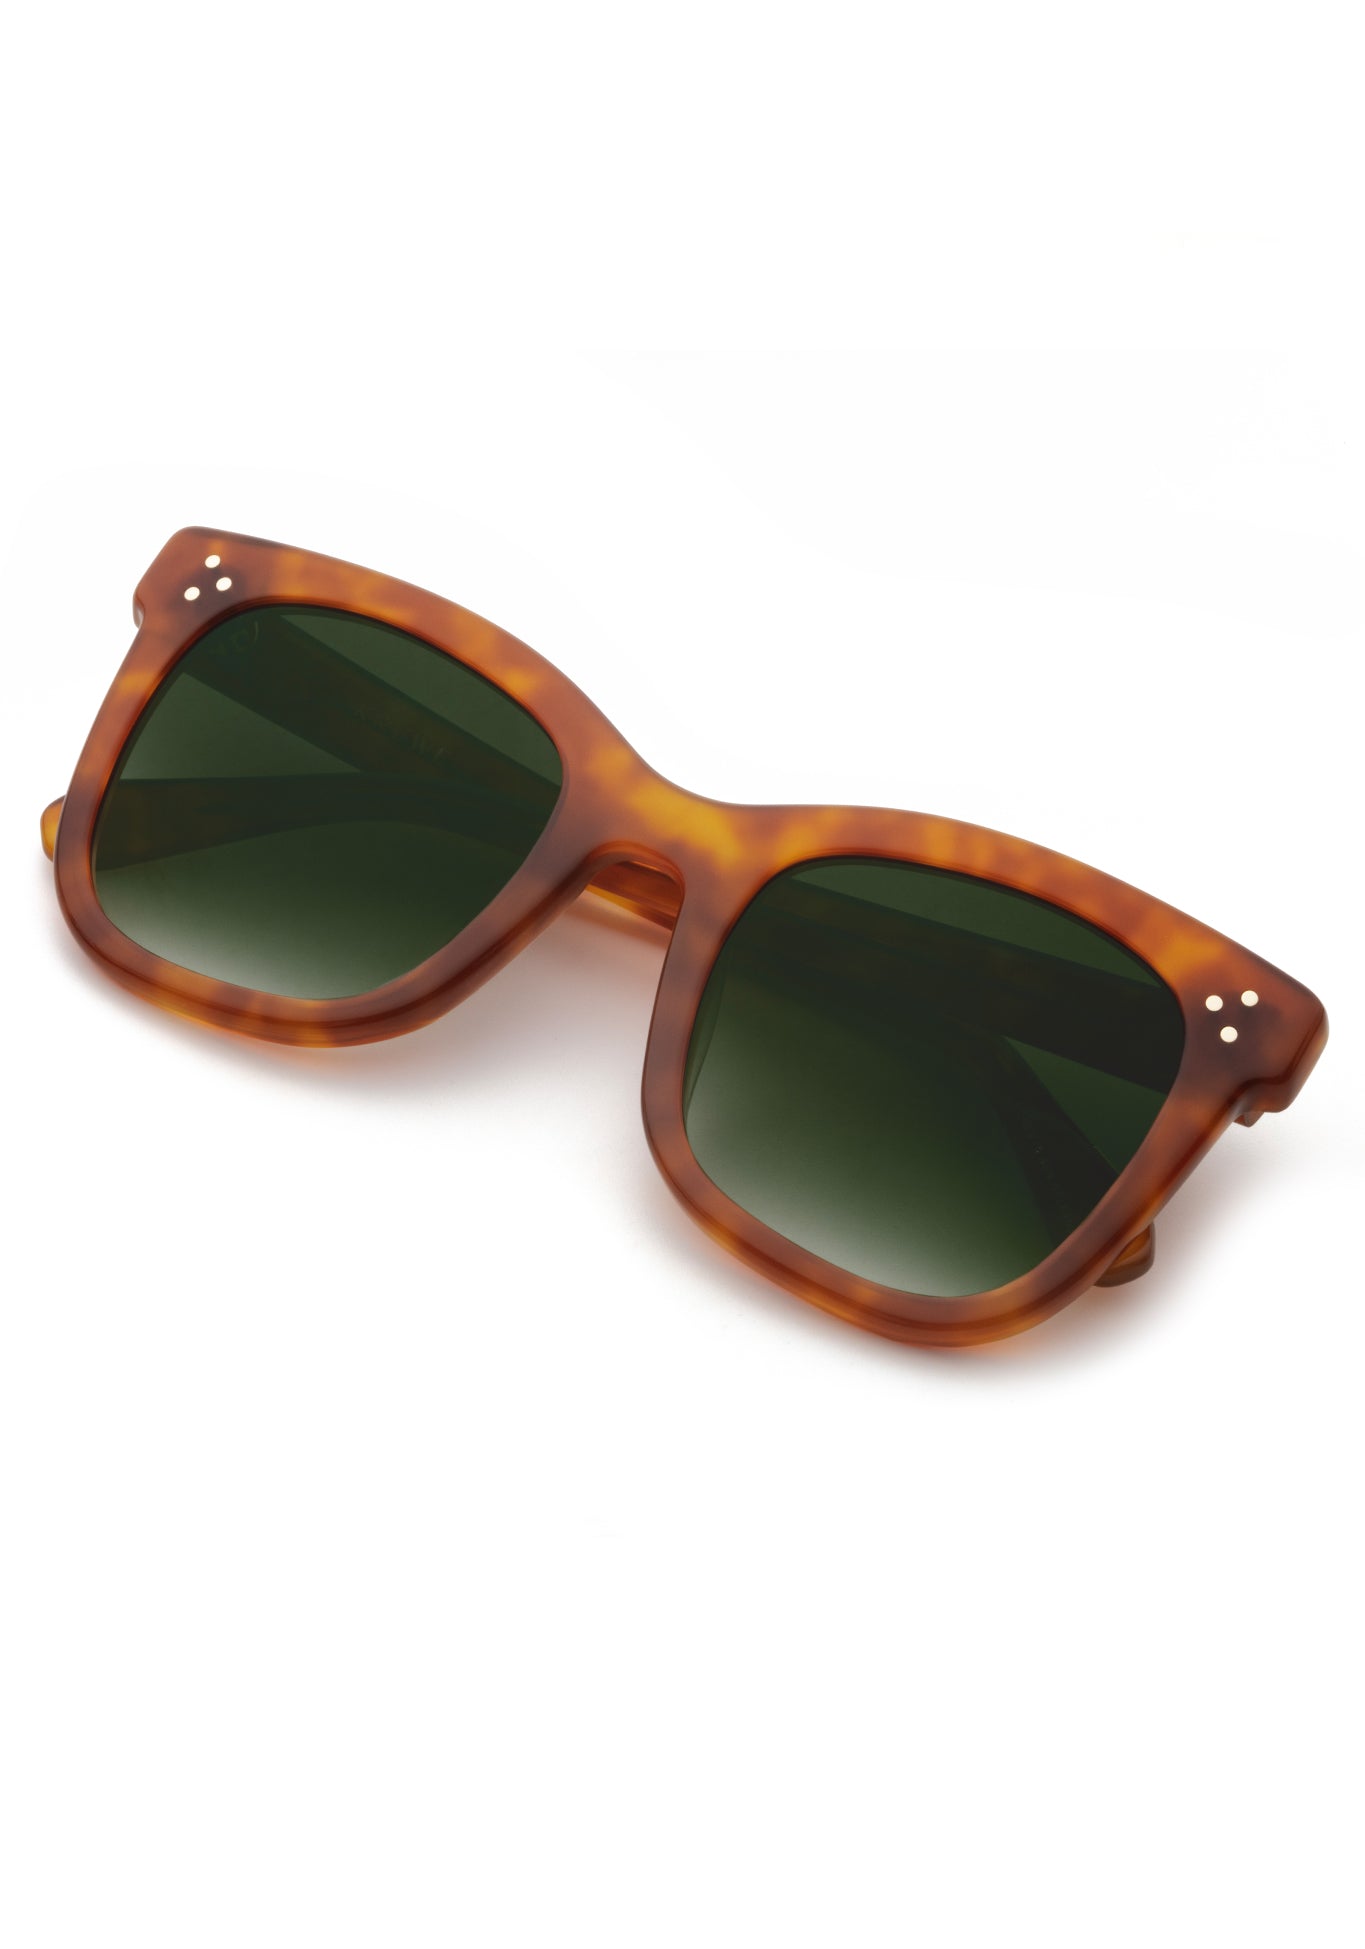 KREWE - Designer Oversized Square Sunglasses - ADELE | Amaro Handcrafted, luxury orange tortoise shell acetate sunglasses. Similar to Oliver Peoples sunglasses, Celine sunglasses